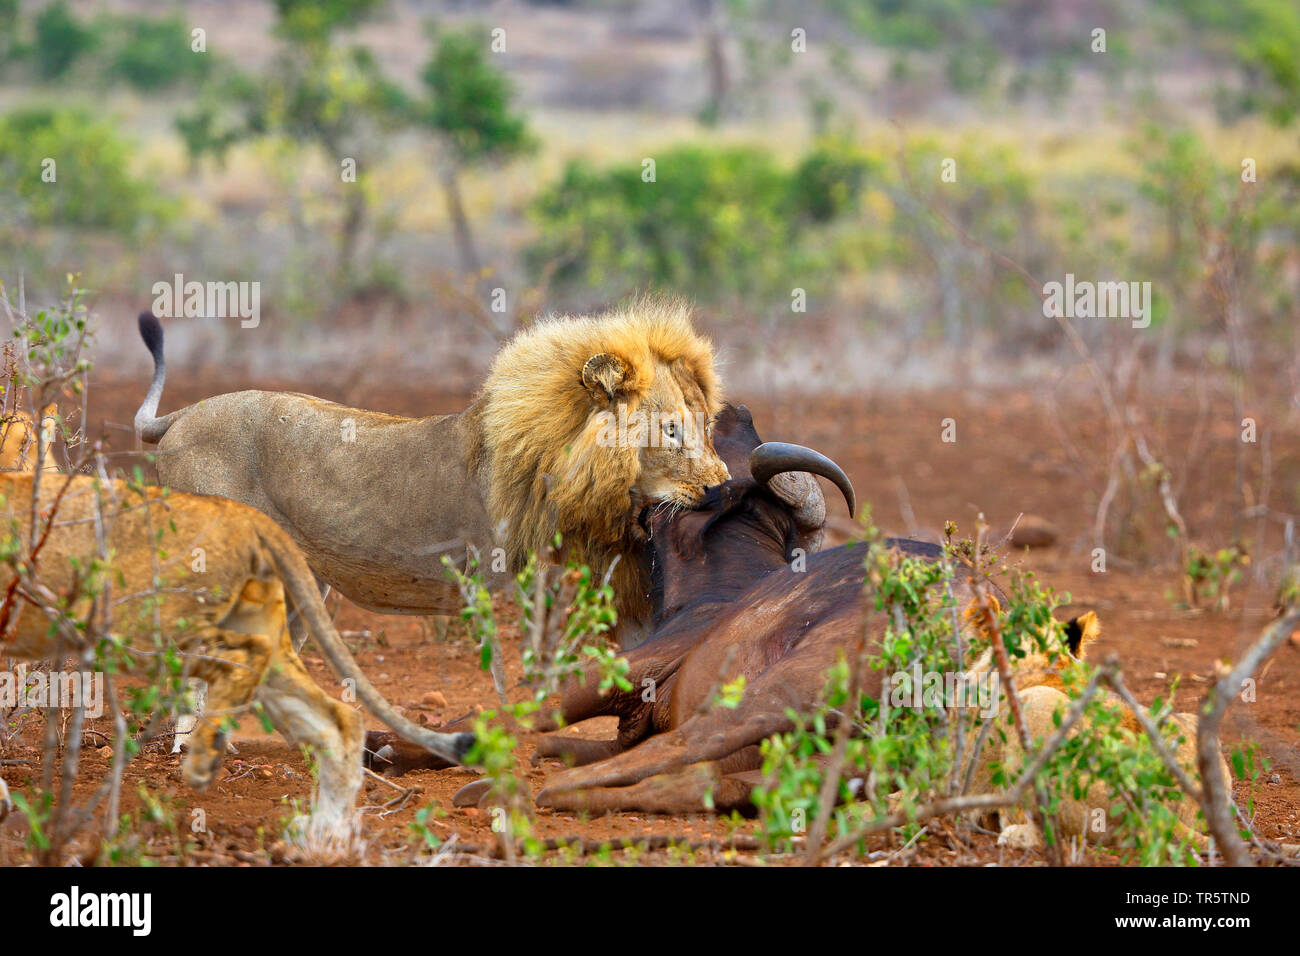 Lion (Panthera leo), homme de mordre à travers la gorge d'un buffle, Afrique du Sud, Mpumalanga, Kruger National Park Banque D'Images